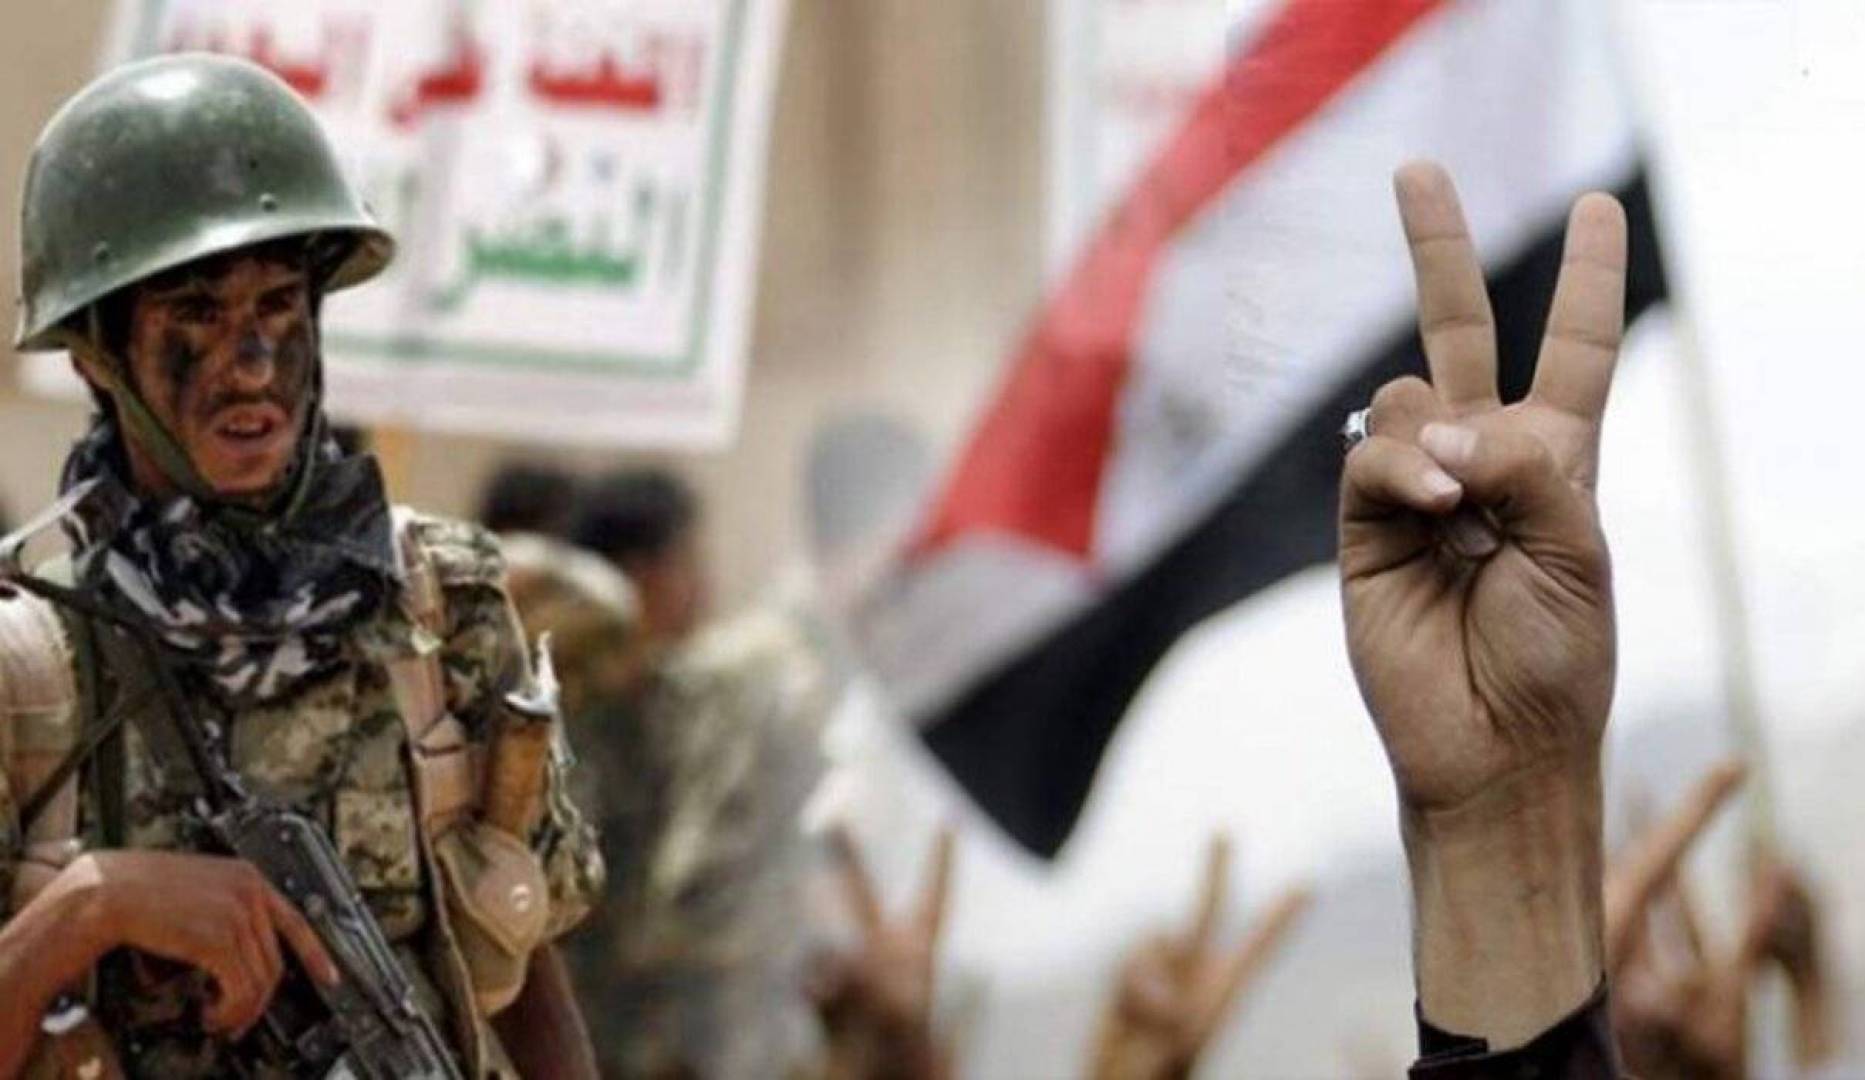 أنصار الله تحدد شروطها لأيّ حوار مع الأطراف اليمنيين الموالين للتحالف